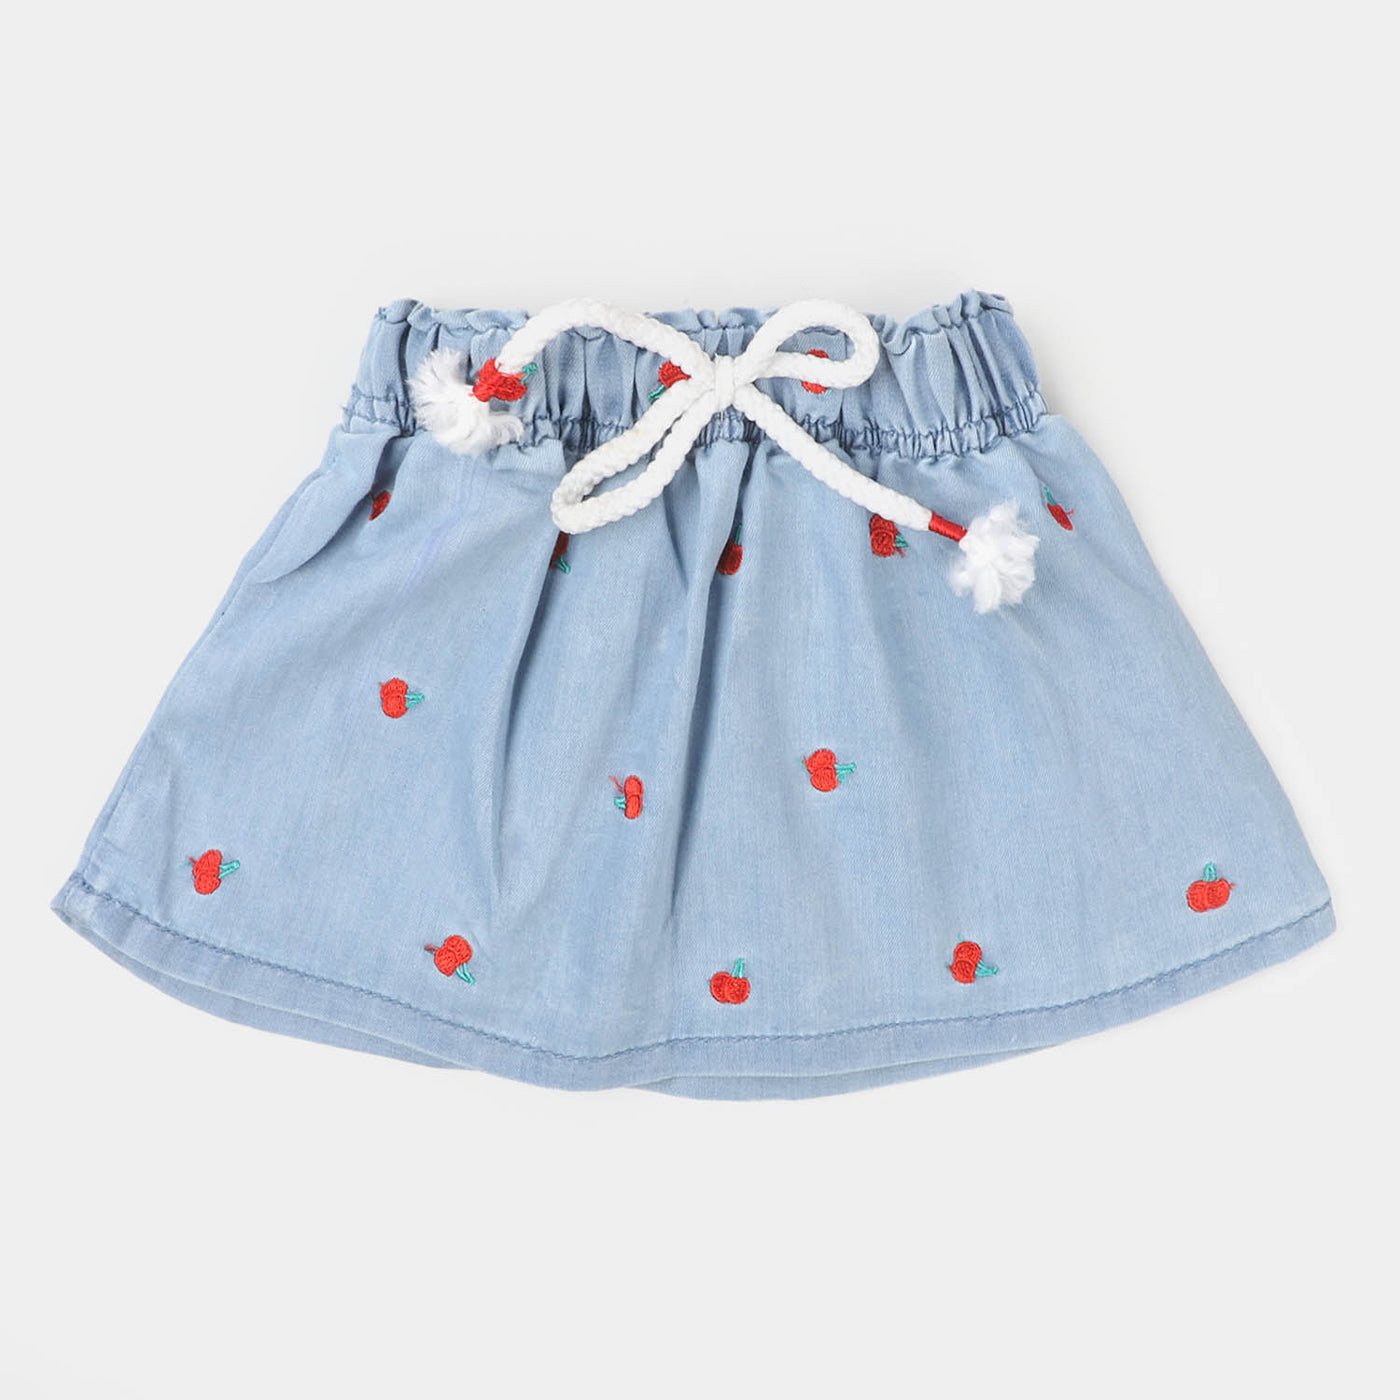 Infant Girls Denim Skirt Cherrific - Ice Blue